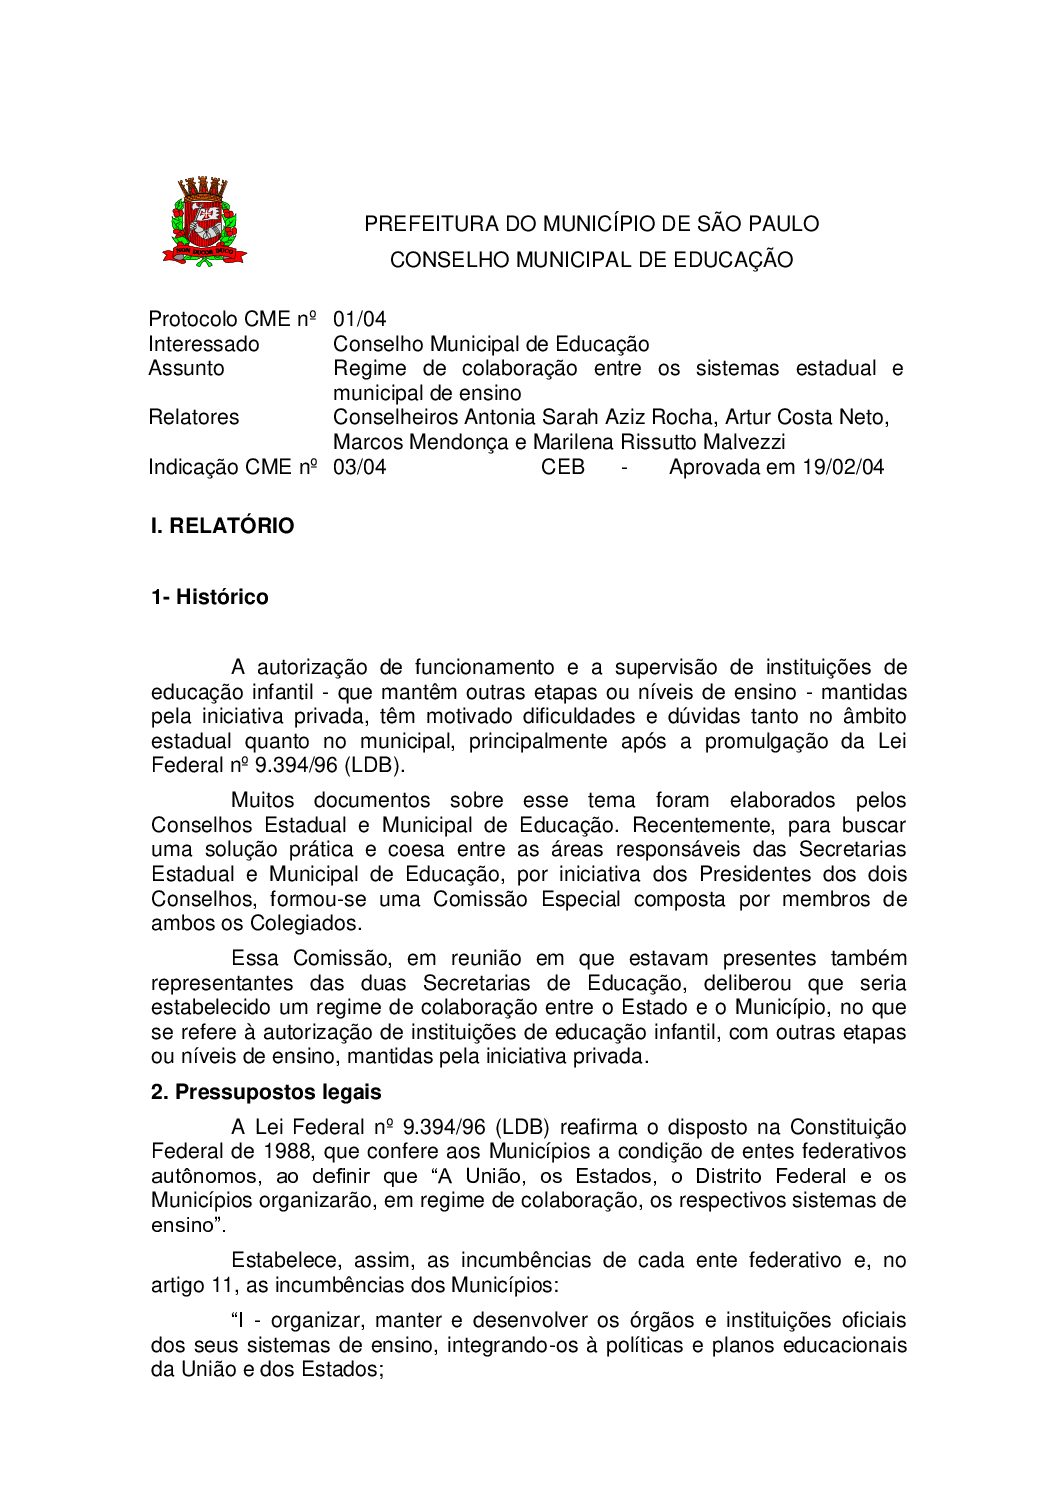 Indicação CME nº 03/2004 - Regime de colaboração entre os sistemas estadual e municipal de ensino 